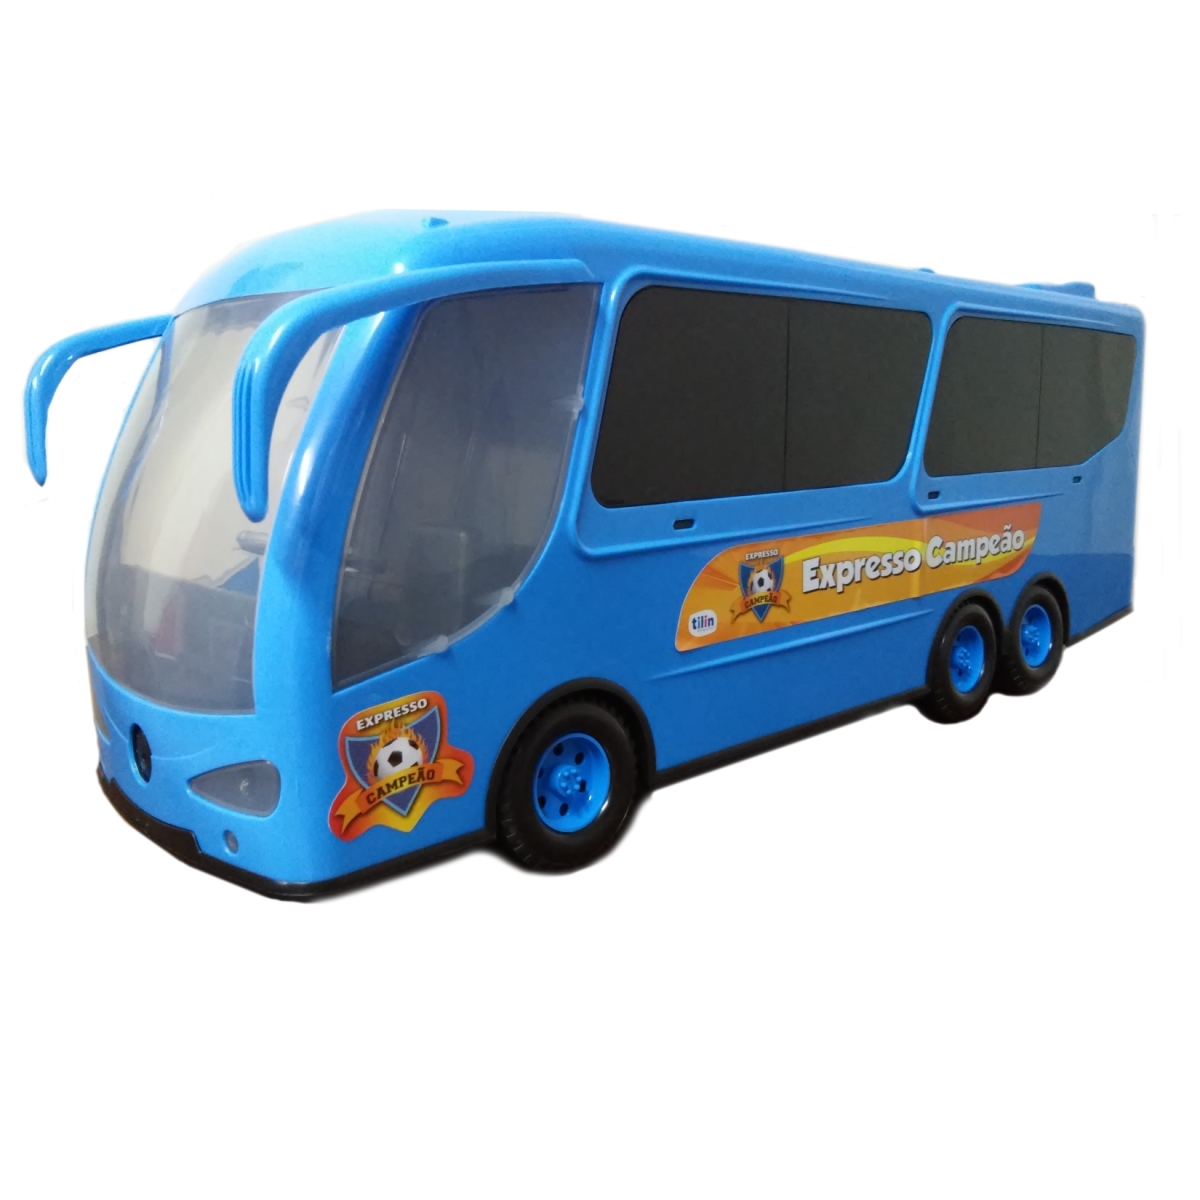 Onibus Expresso Campeao - Tilin - 60Cm 400 Som E Luzes Azul